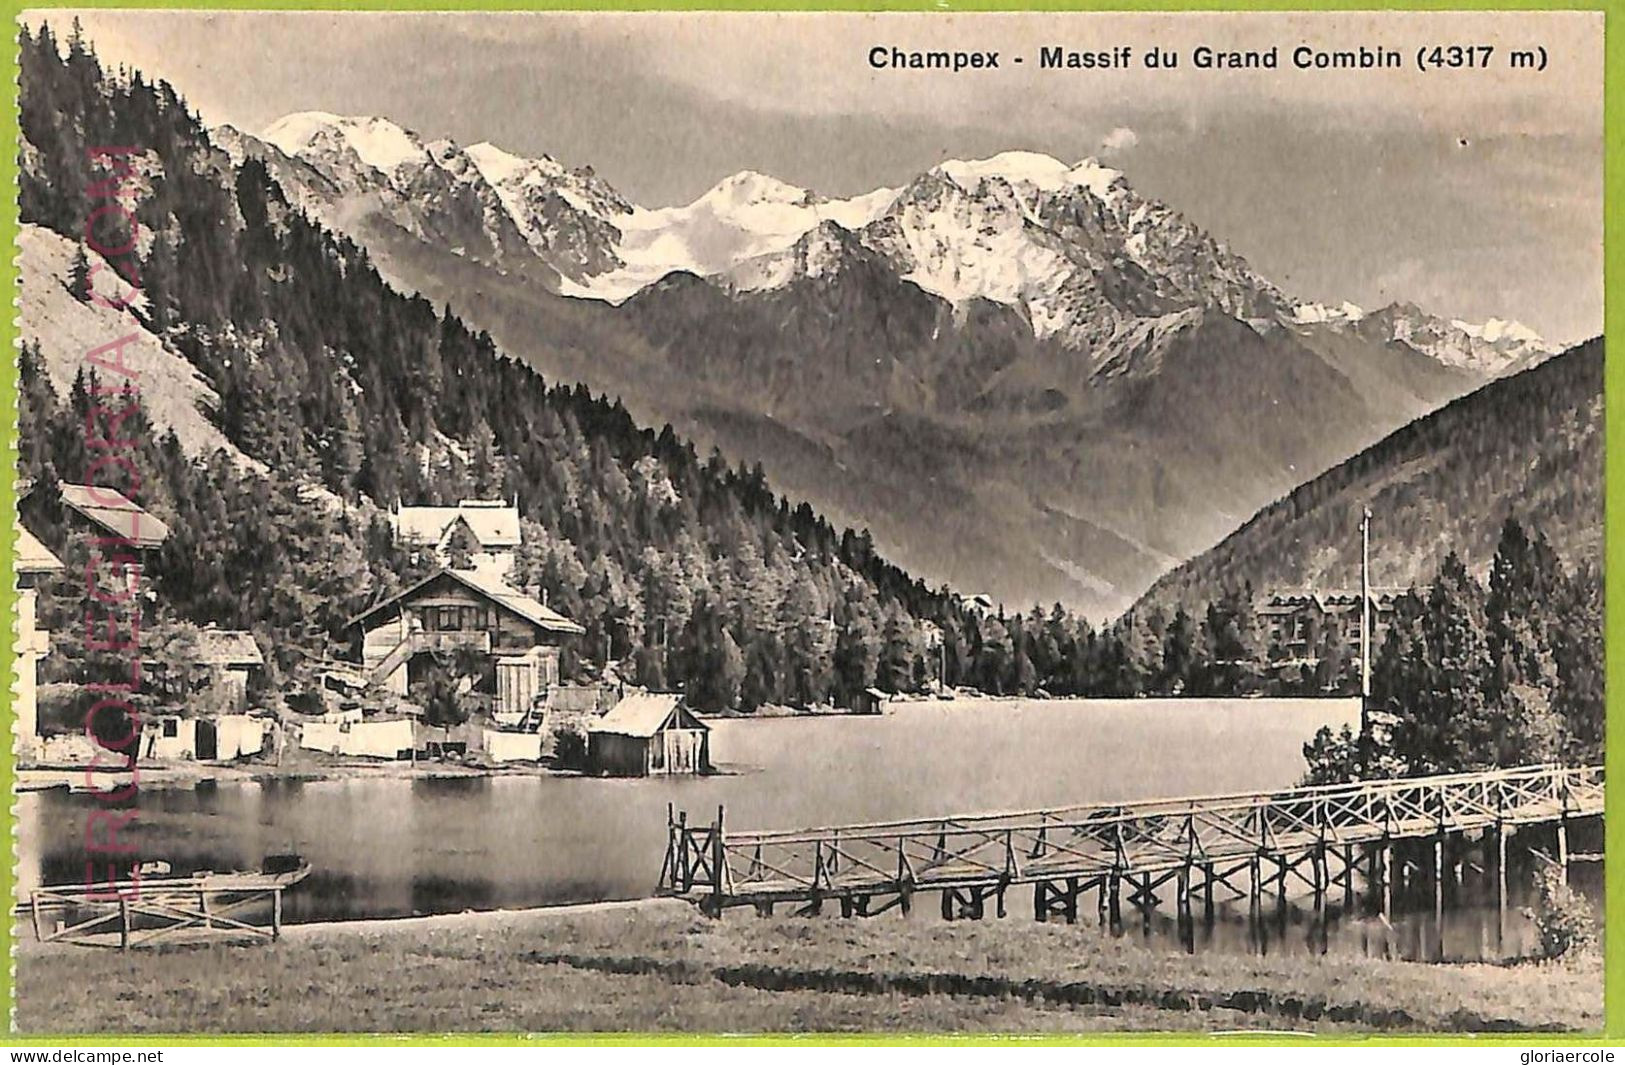 Ad4096 - SWITZERLAND Schweitz - Ansichtskarten VINTAGE POSTCARD -  Champex - Cham